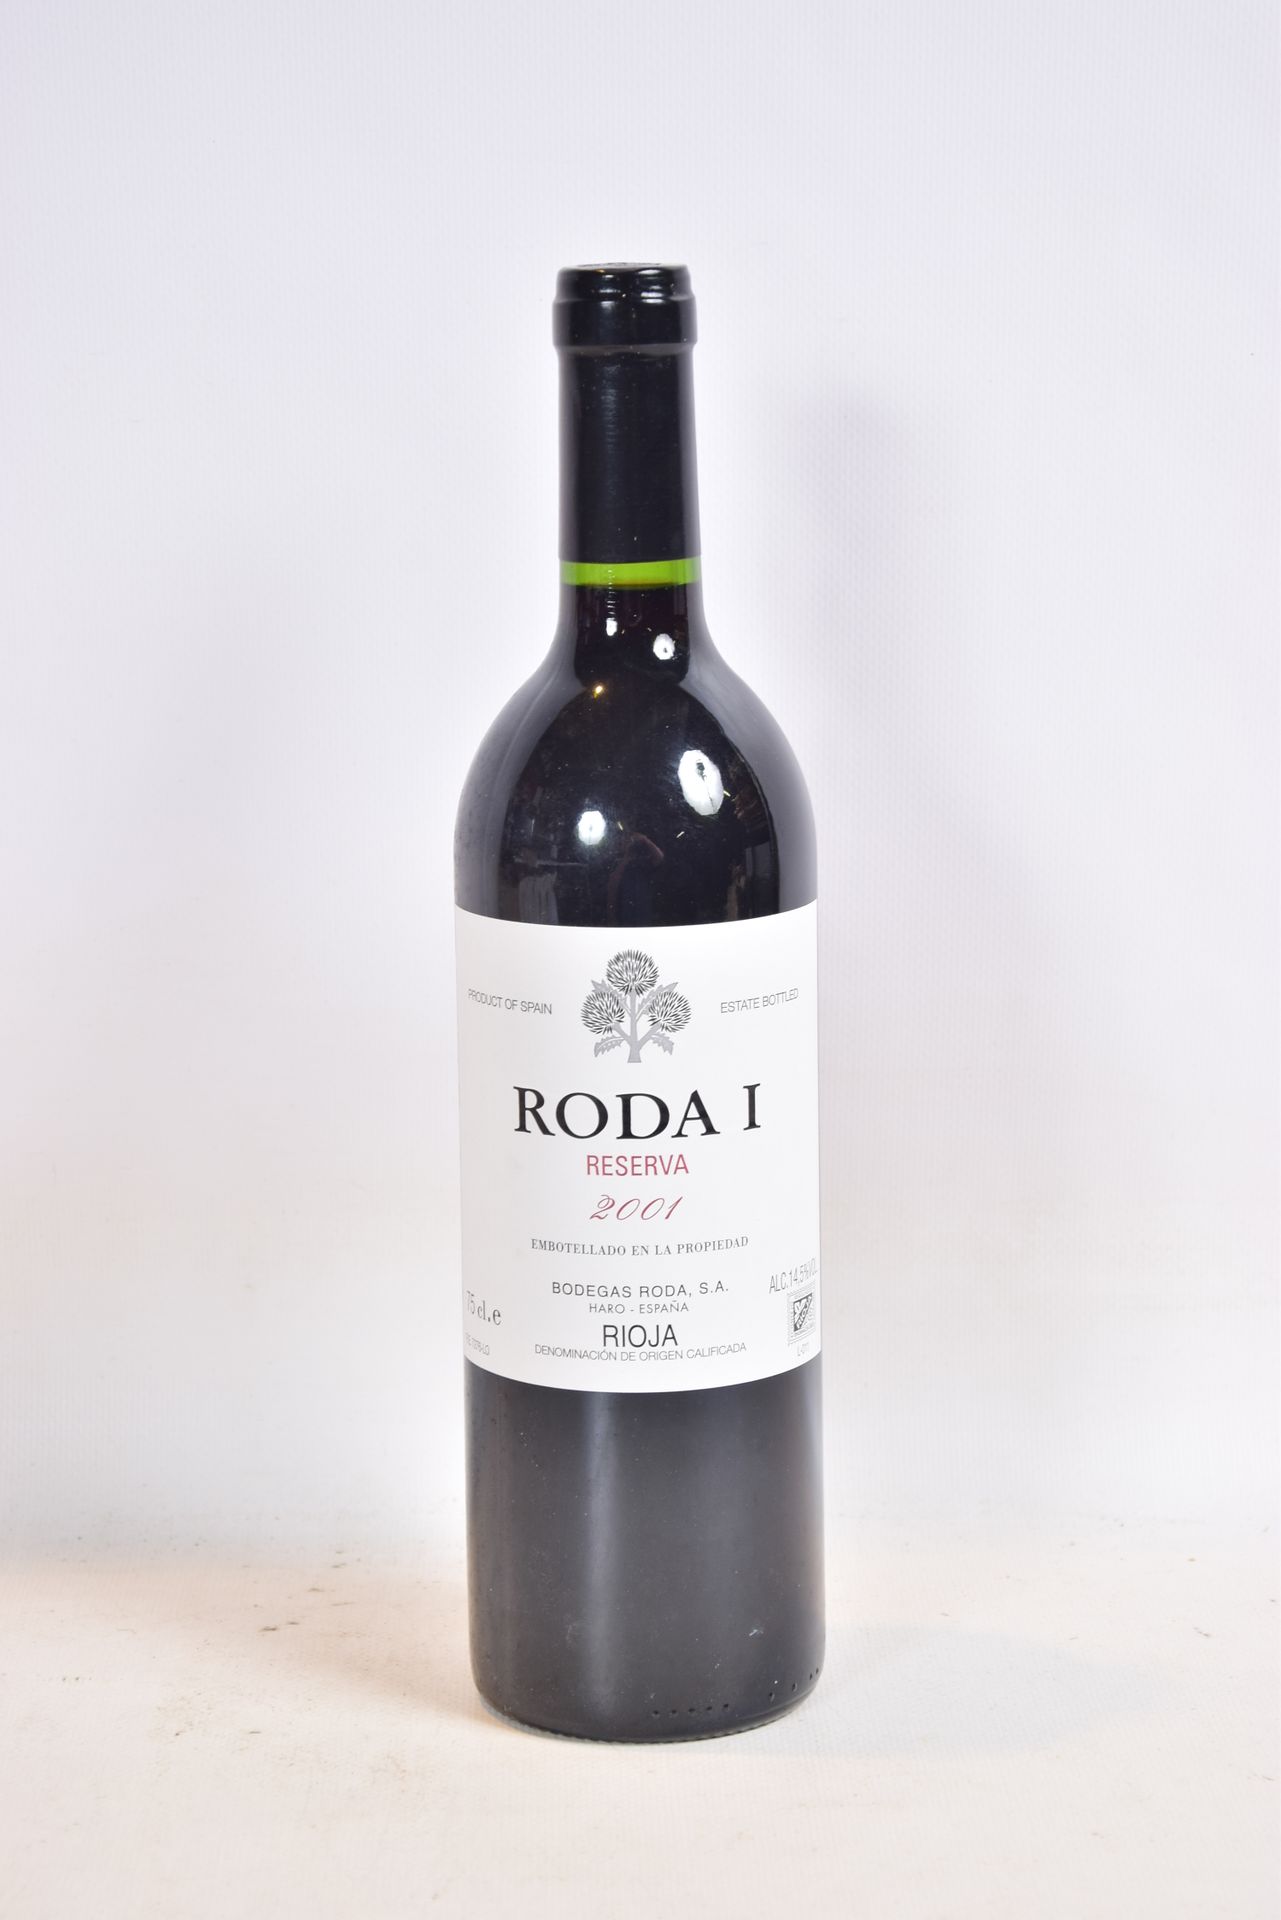 Null 1 Blle Rioja RODA 1 Reserva mise Bodegas Roda (España) 2001

	Presentación &hellip;